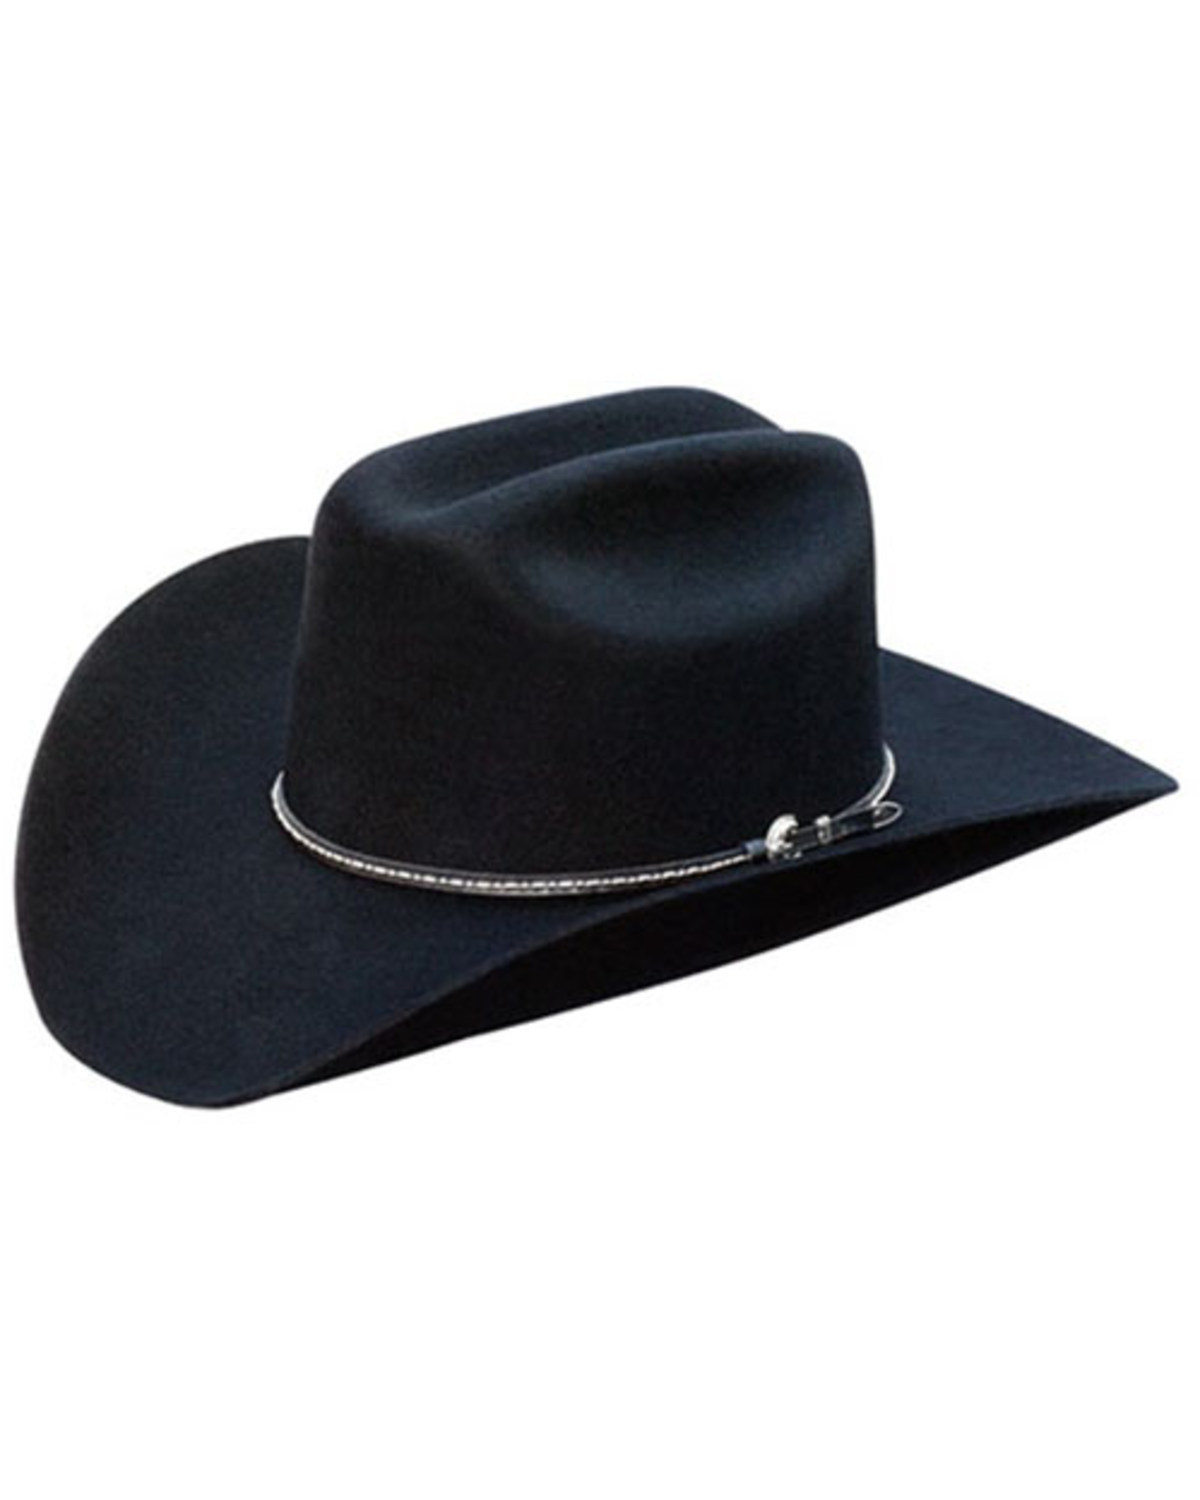 Silverado Bart Felt Cowboy Hat